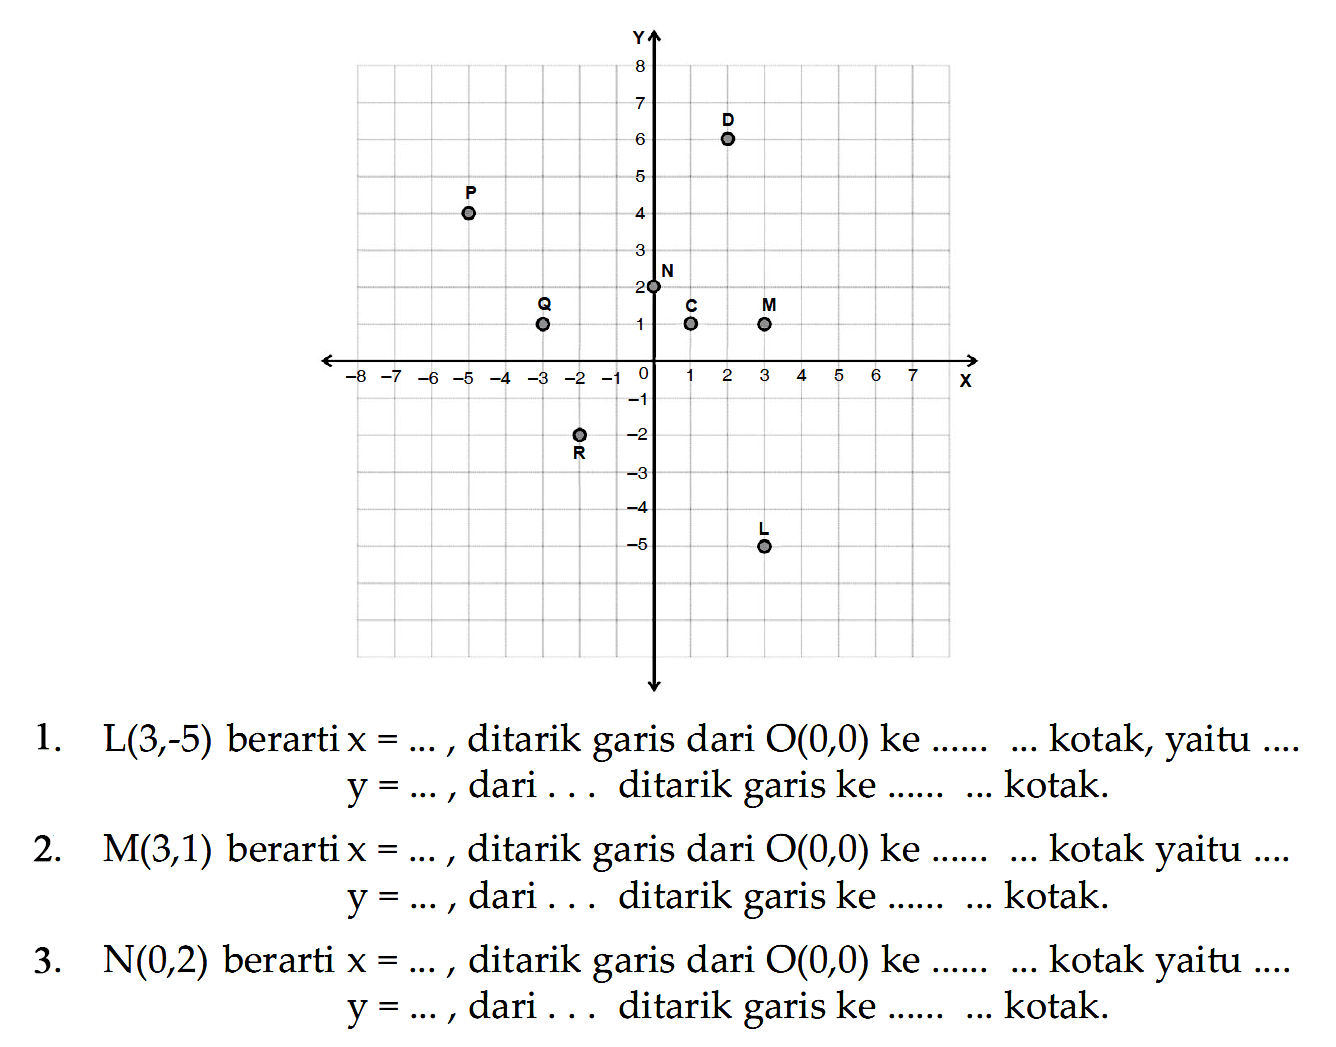 C D L M N P Q R x y 
0 1 2 3 4 5 6 7 8 1 2 3 4 5 6 7
-1 -2 -3 -4 -5 -6 -7 -8  -1 -2 -3 -4 -5 
1.  L(3,-5)  berarti  x=... , ditarik garis dari  O(0,0)  ke  ... ... . . .  kotak, yaitu ....  y=... , dari ... ditarik garis ke ......... kotak.
2.  M(3,1)  berartix  =... , ditarik garis dari  O(0,0)  ke  ... ... . . .  kotak yaitu ....  y=... , dari ... ditarik garis ke ......... kotak.
3.  N(0,2)  berarti  x=... , ditarik garis dari  O(0,0)  ke  ... ... .... kotak yaitu ....  y=... , dari ... ditarik garis ke ......... kotak.